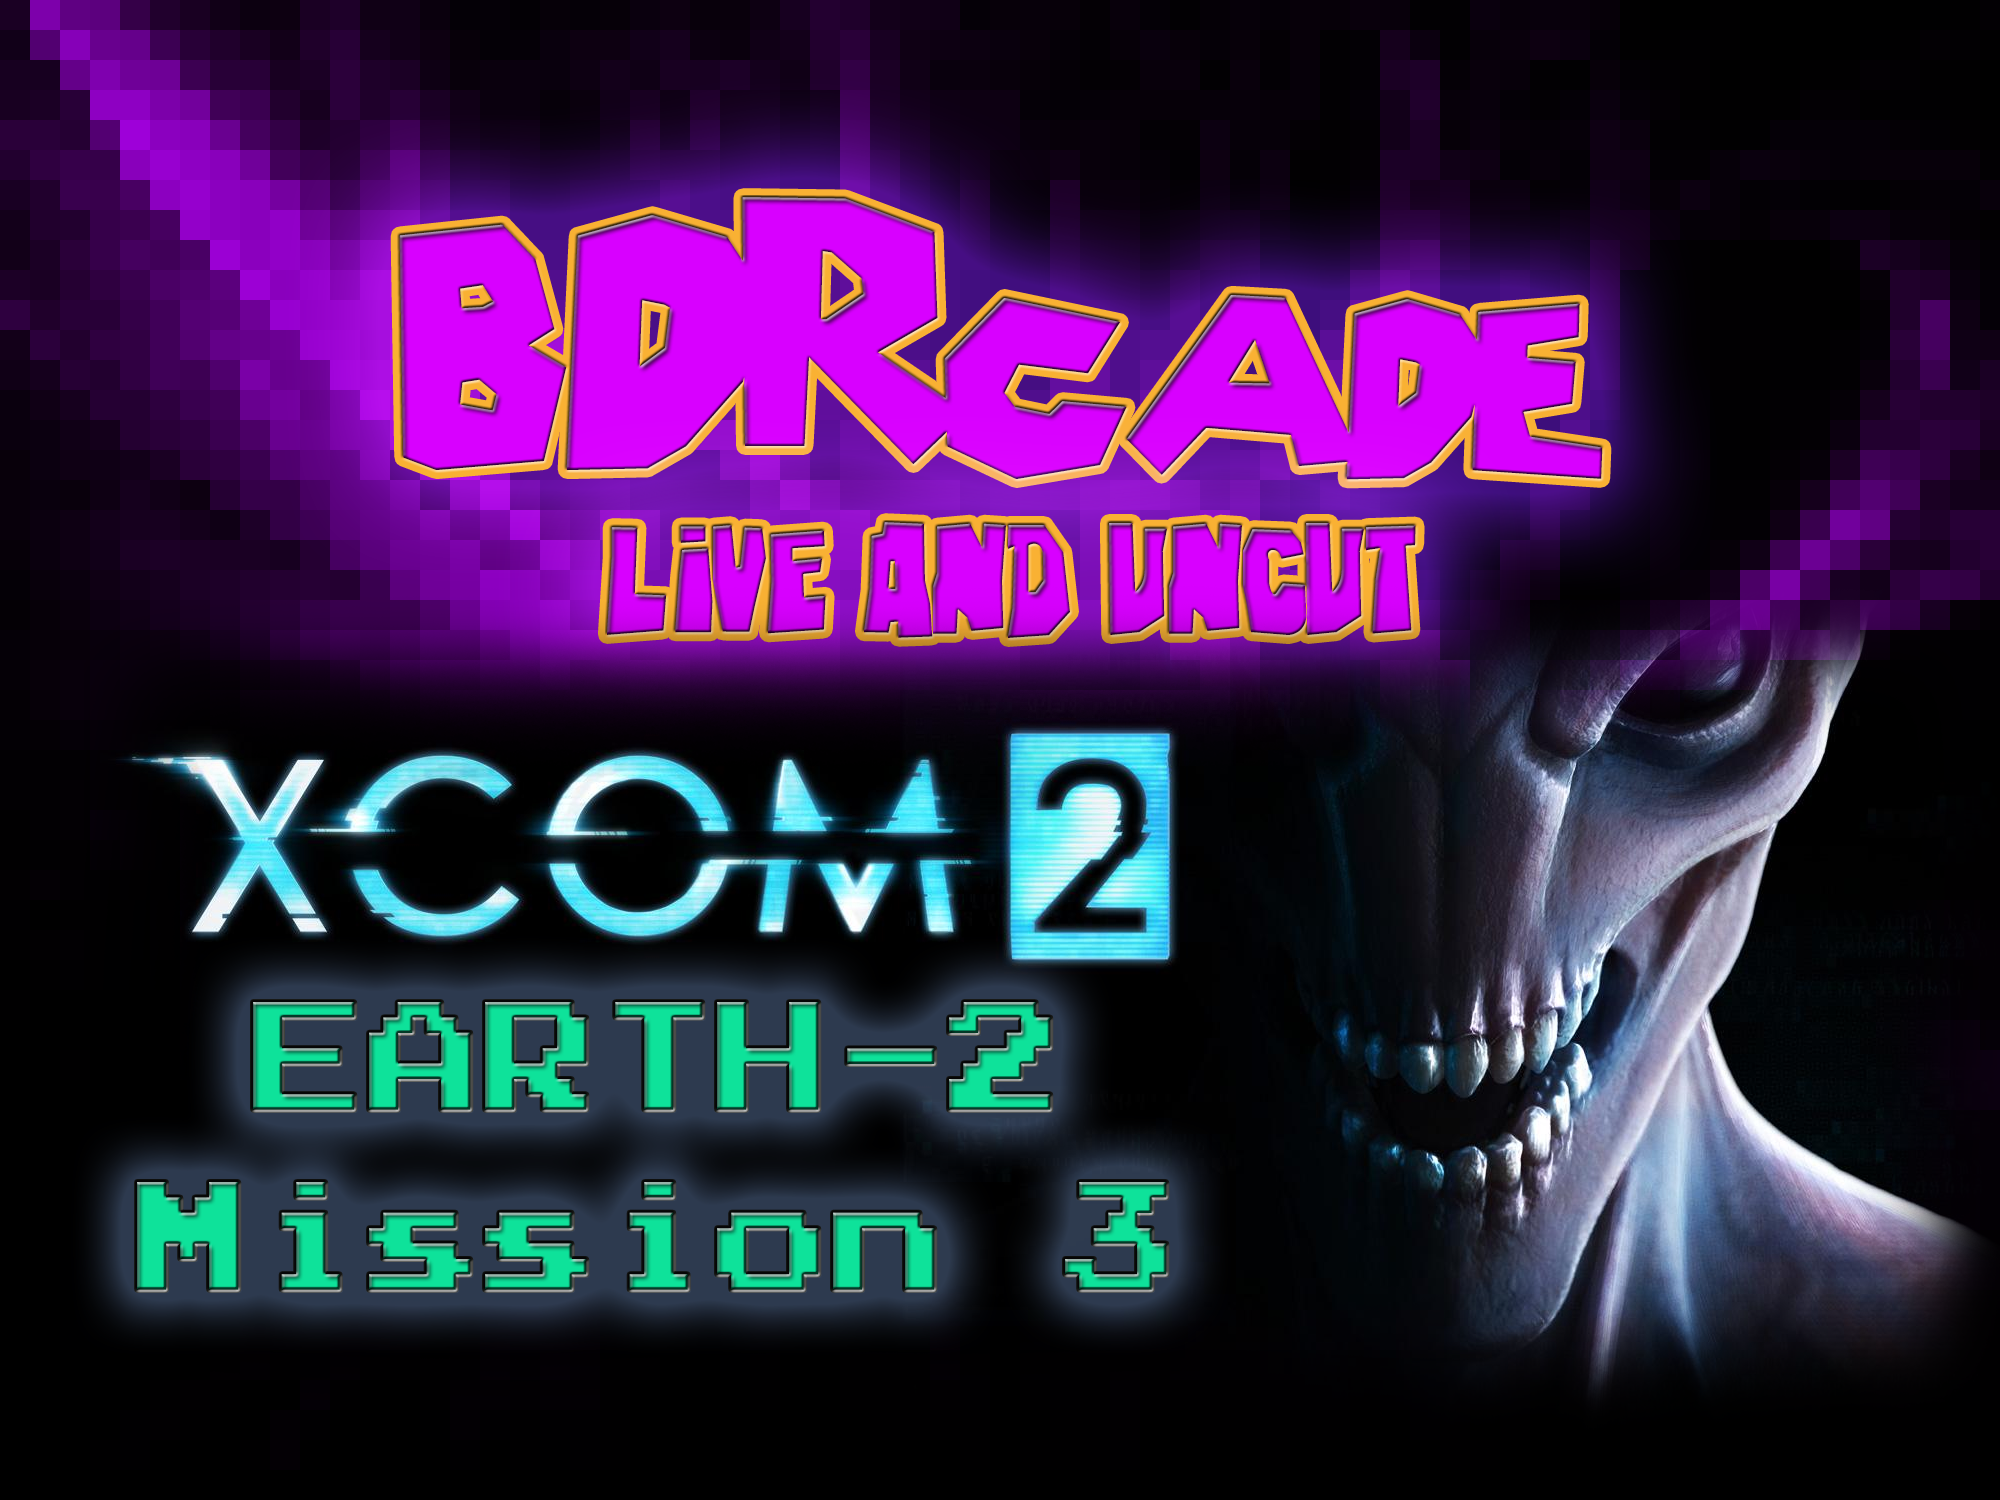 XCOM 2 (Earth-2) : Mission 3 – A BDRcade Live Stream